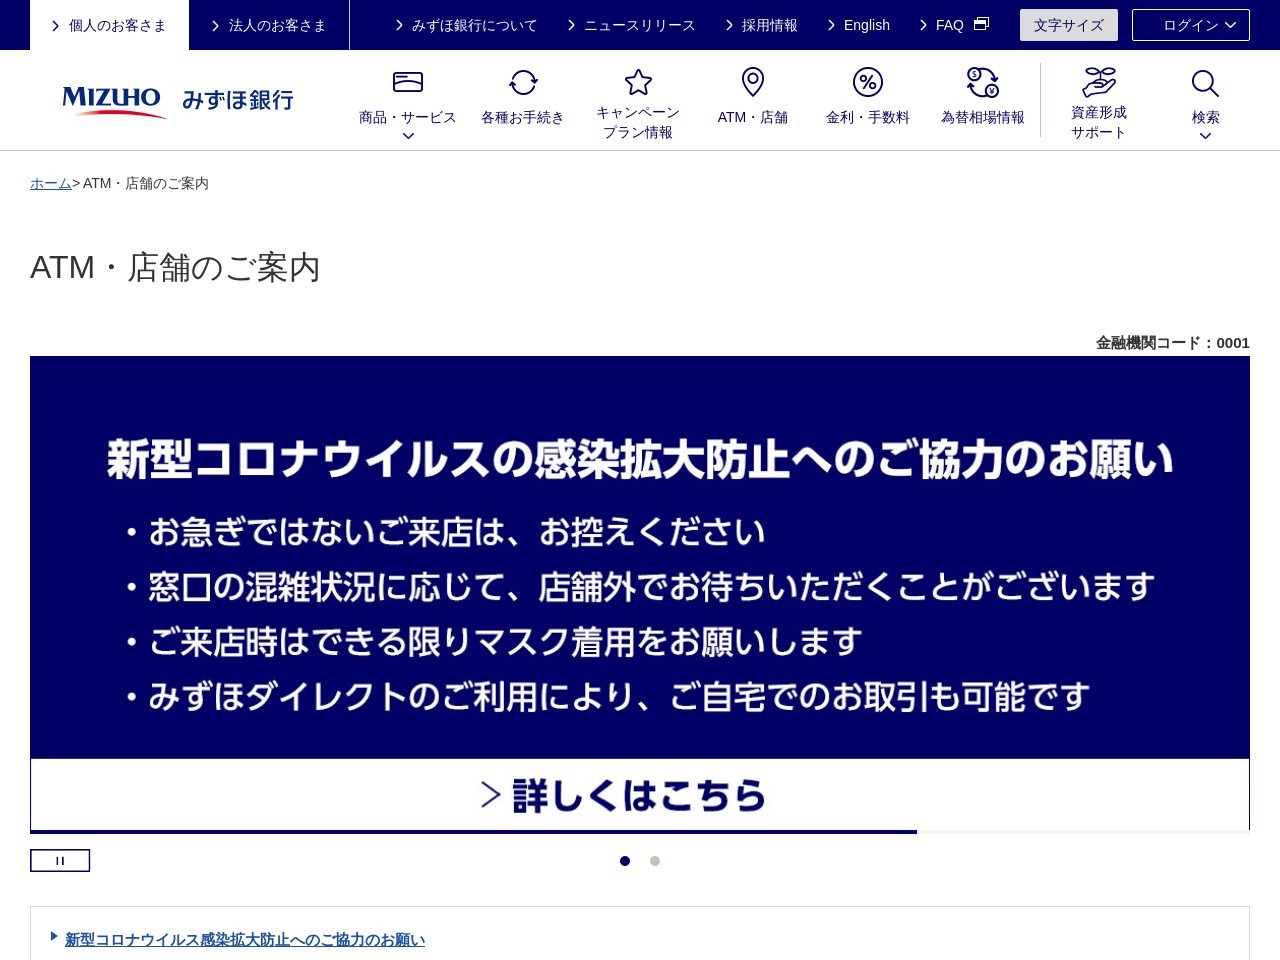 みずほ銀行 佐賀支店のクチコミ・評判とホームページ